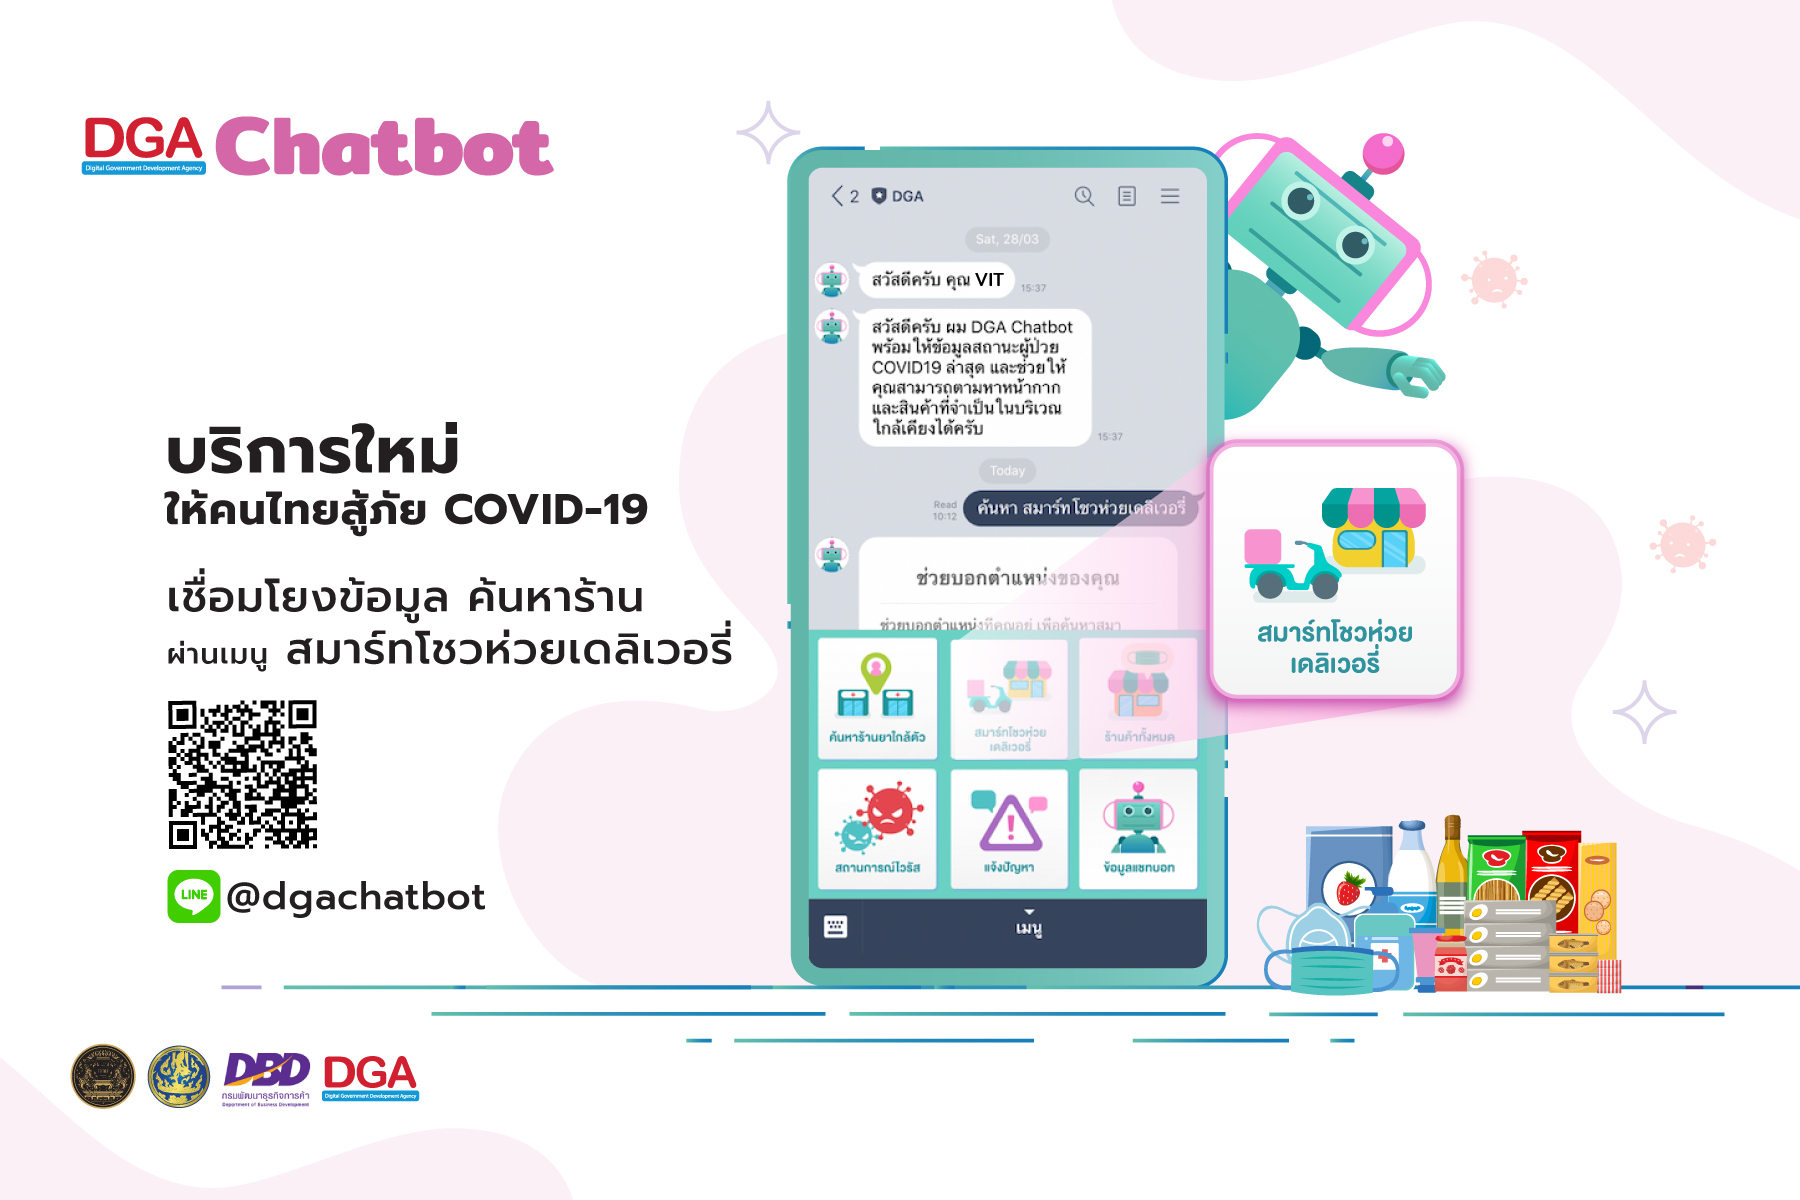 DGA ร่วมมือกับกรมพัฒนาธุรกิจการค้า เปิดตัว DGA Chatbot ให้ข้อมูล ร้านโชวห่วย แหล่งจำหน่ายสินค้าอุปโภค รับมือภัยโควิด 19